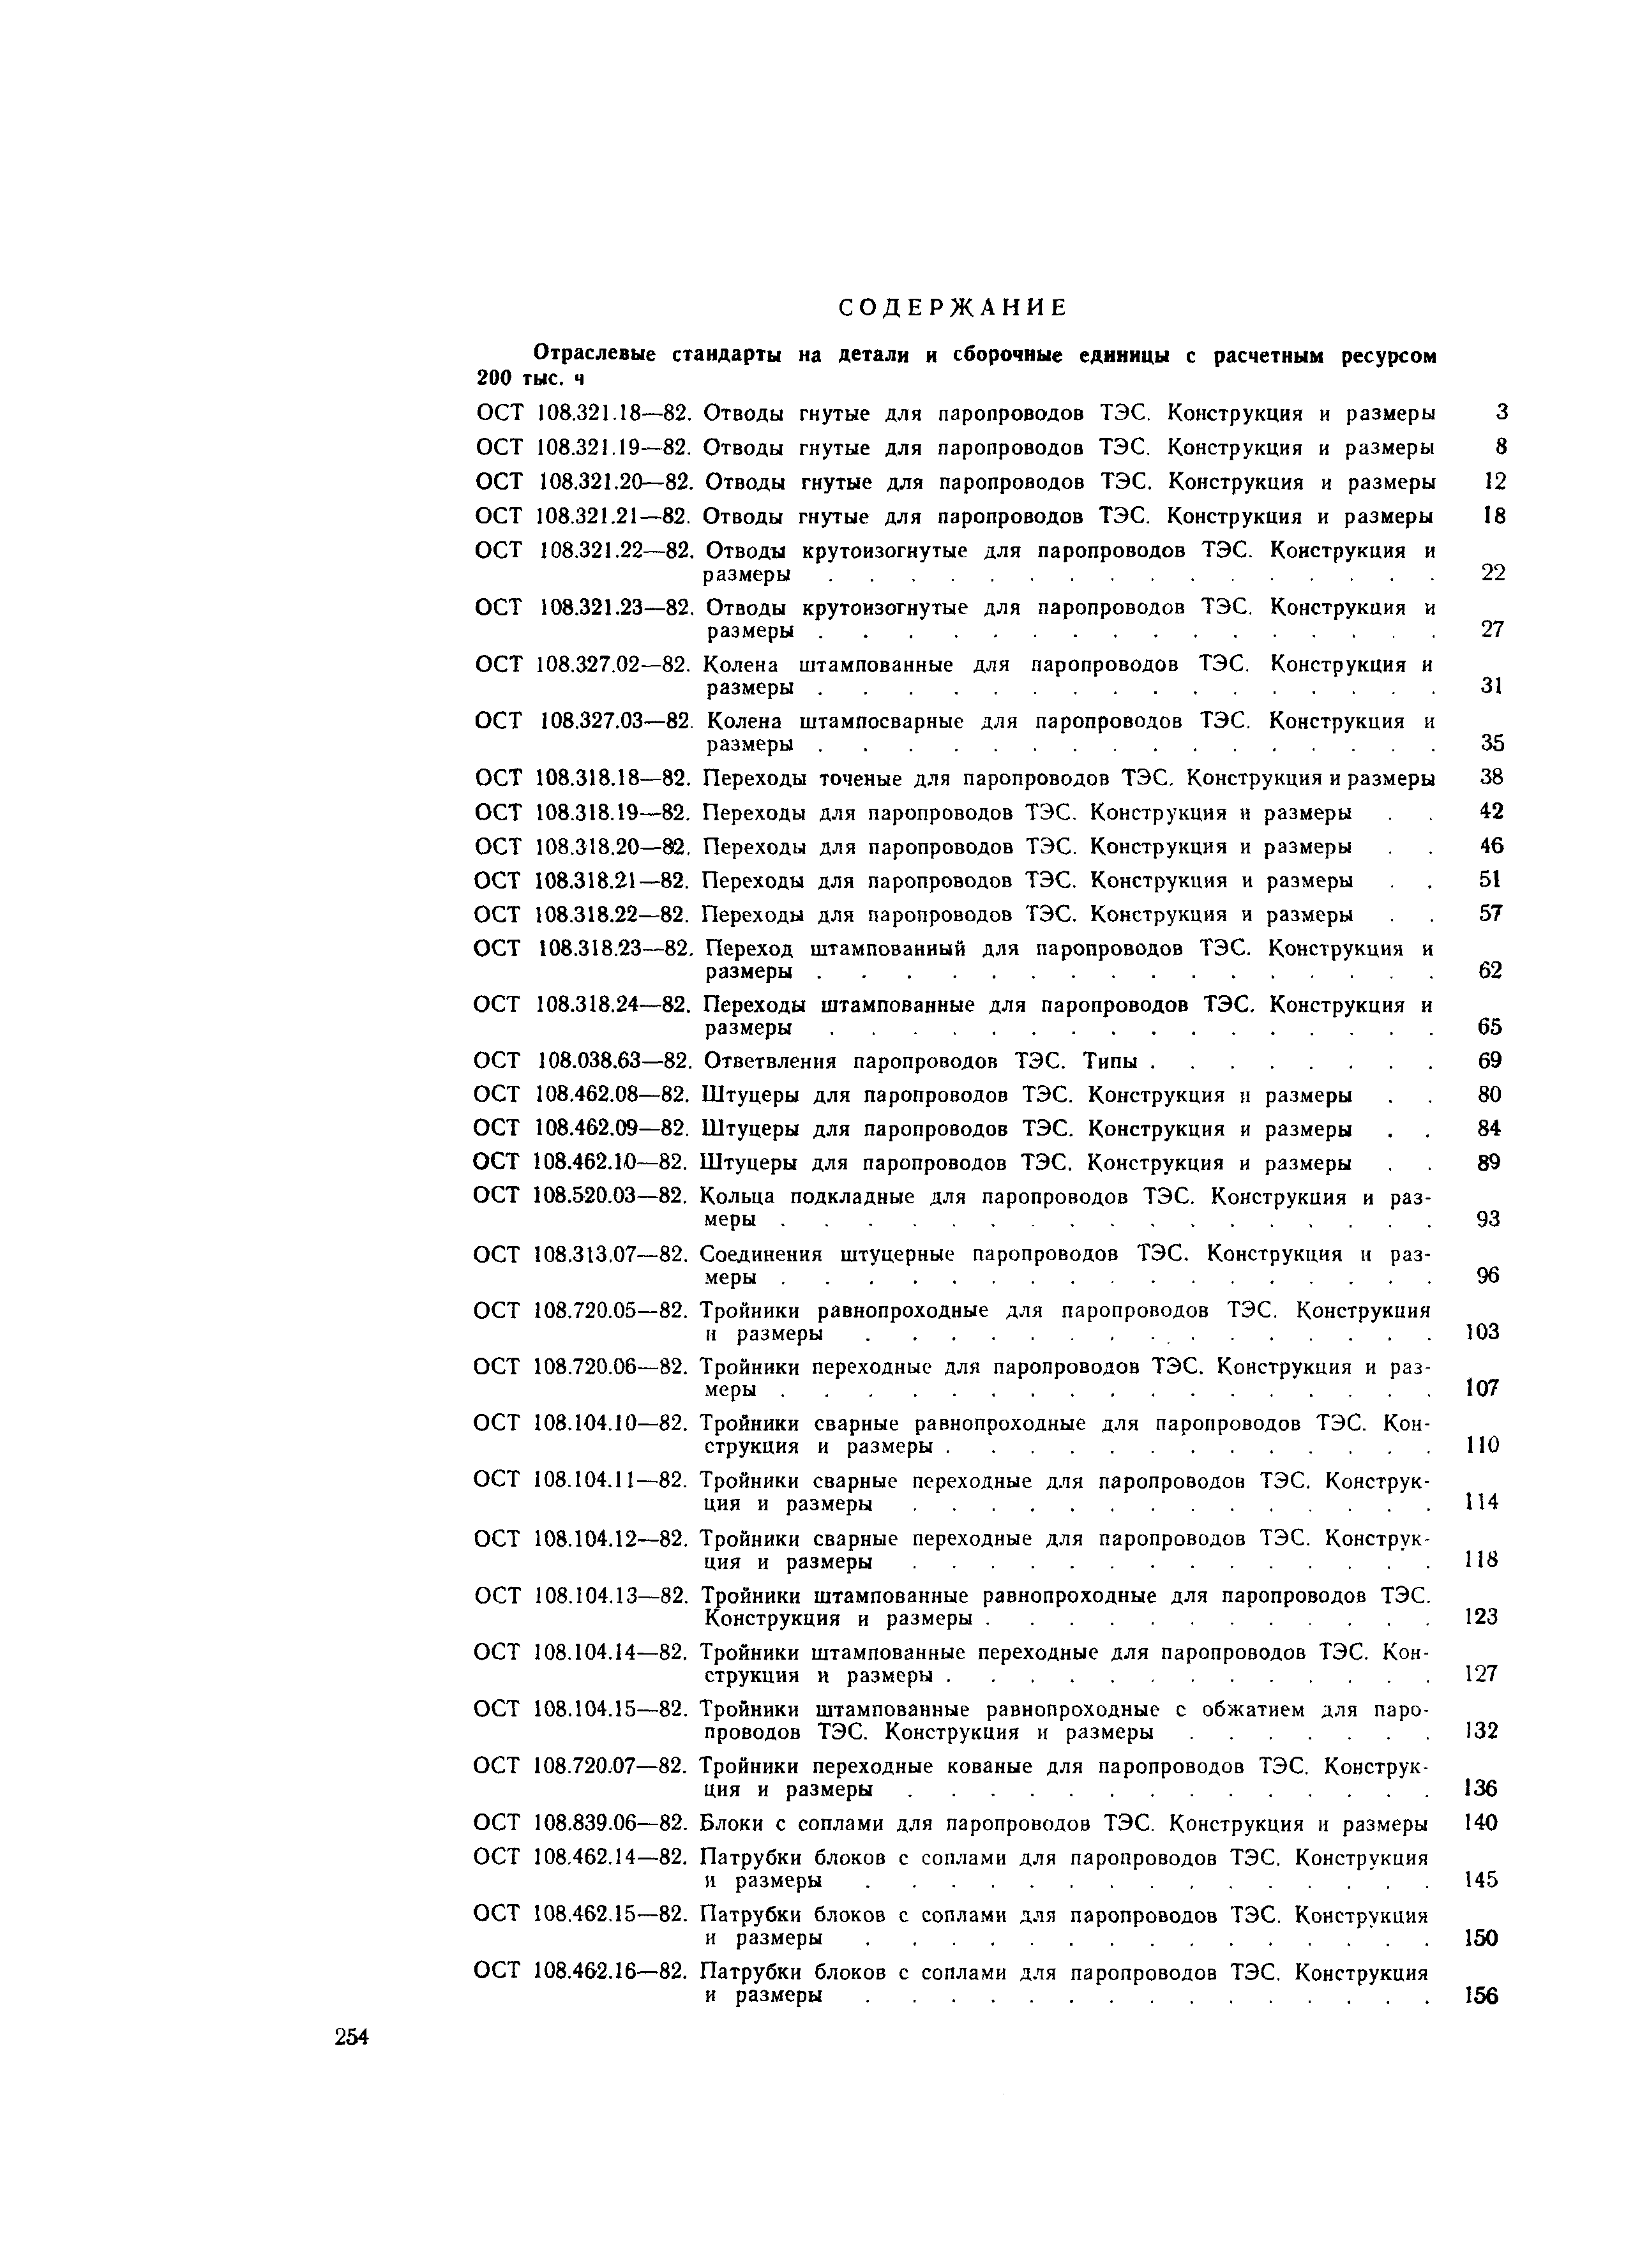 ОСТ 108.104.14-82